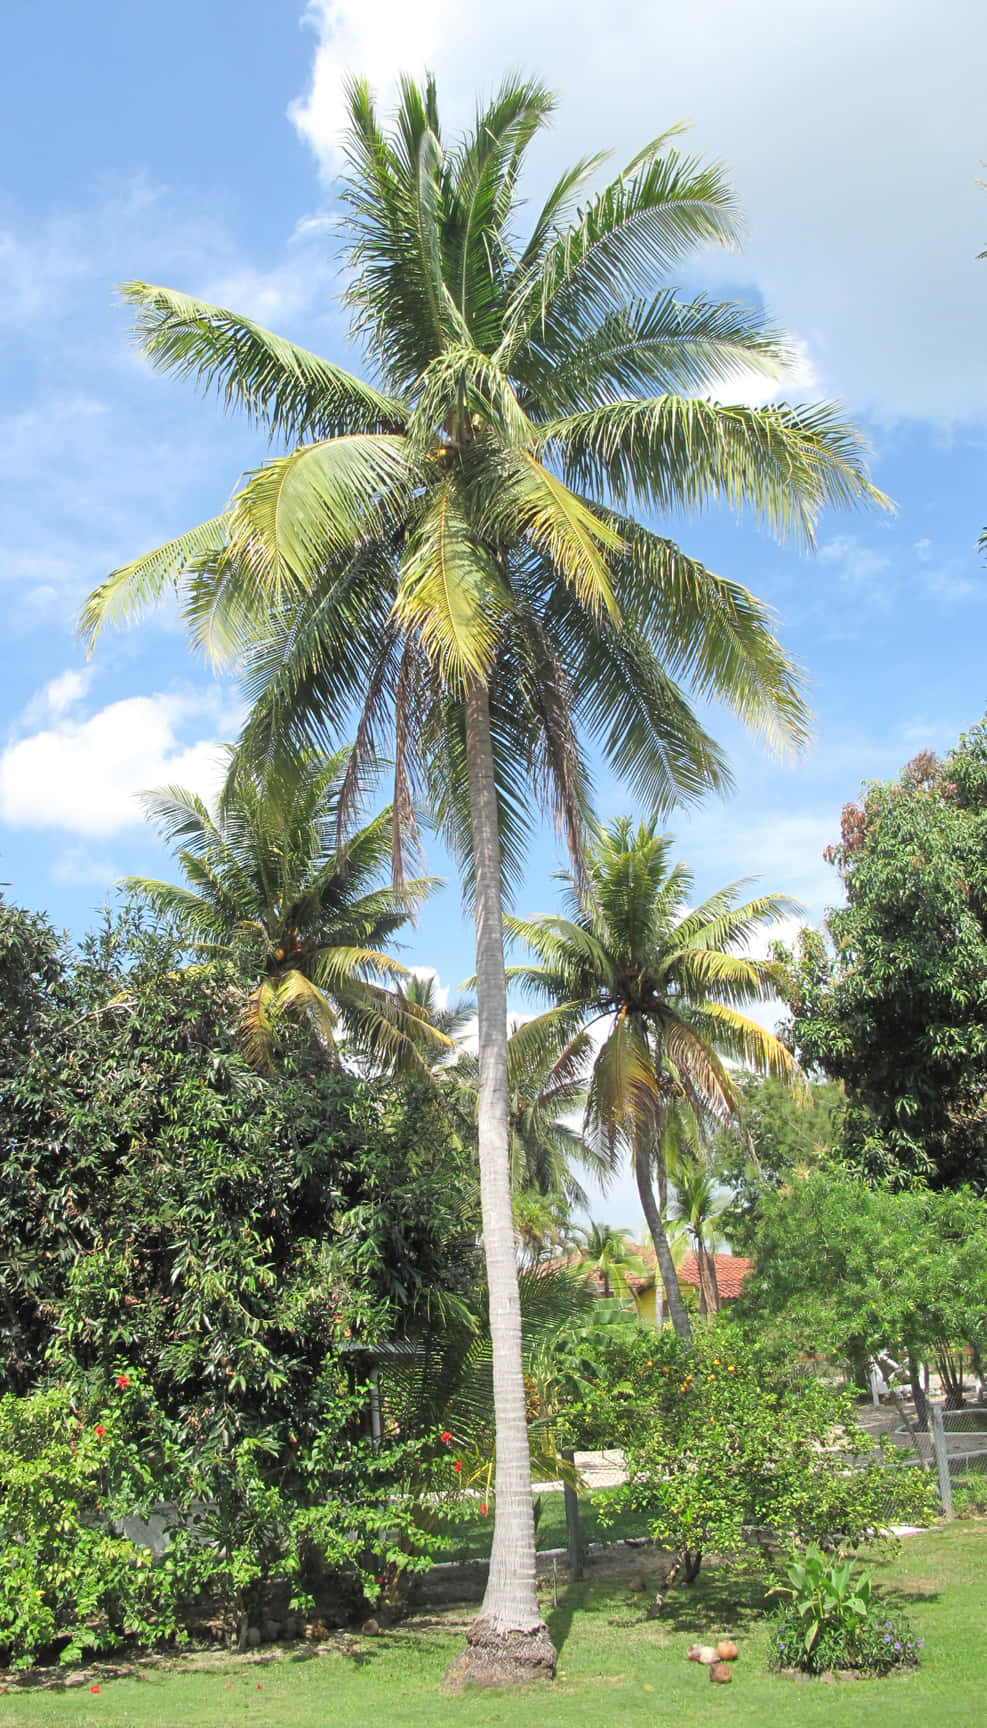 Disfrutade Las Vibraciones Tropicales Con Una Vista Increíble De Este Árbol De Coco.